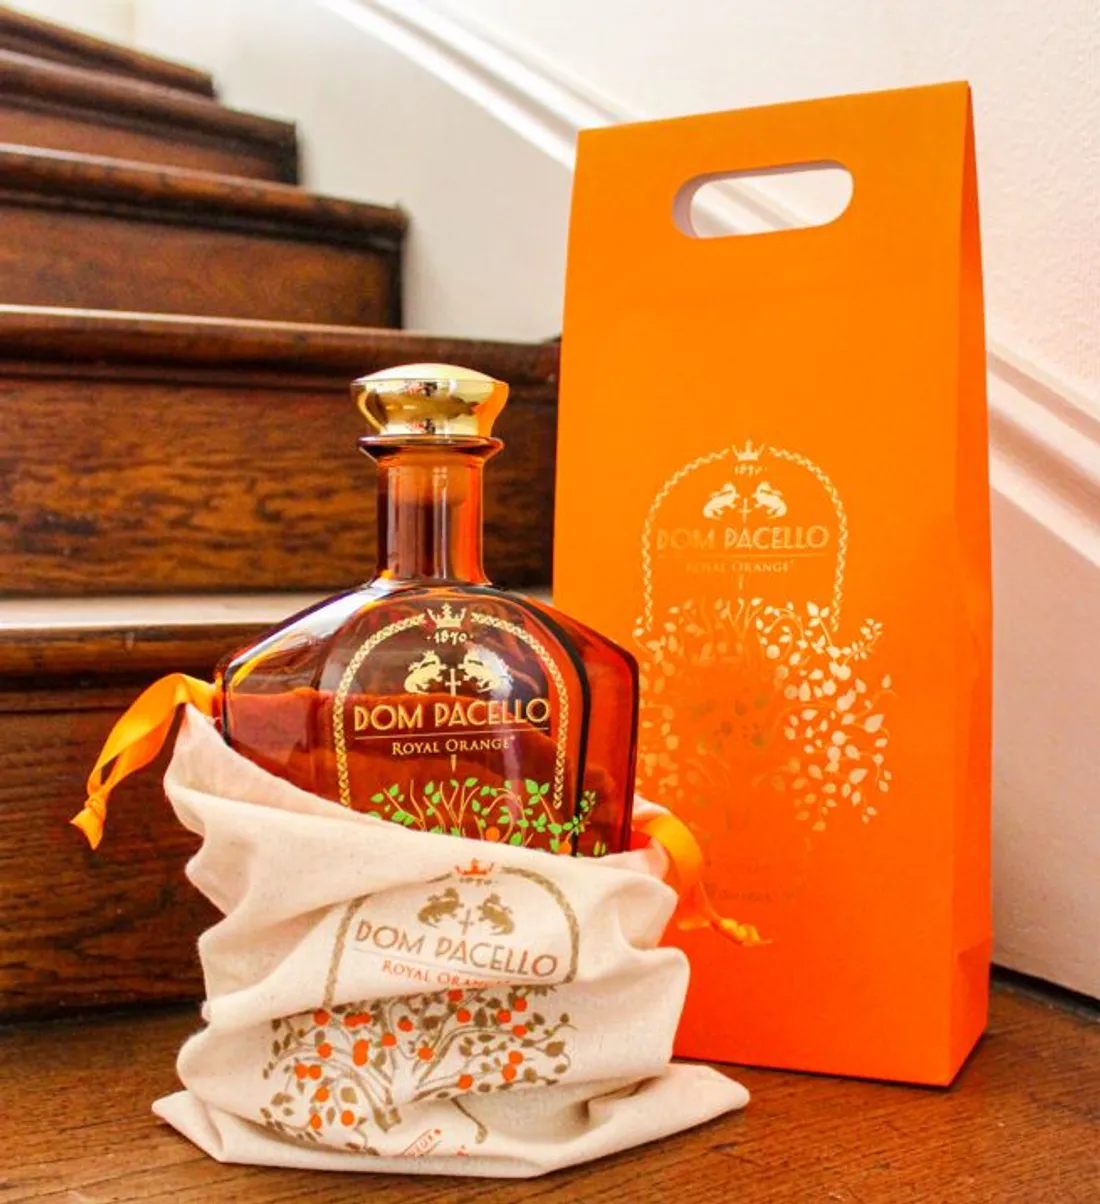 Cette liqueur d'orange Dom Pacello Royal Orange a reçu le prix "World Liqueur Awards"